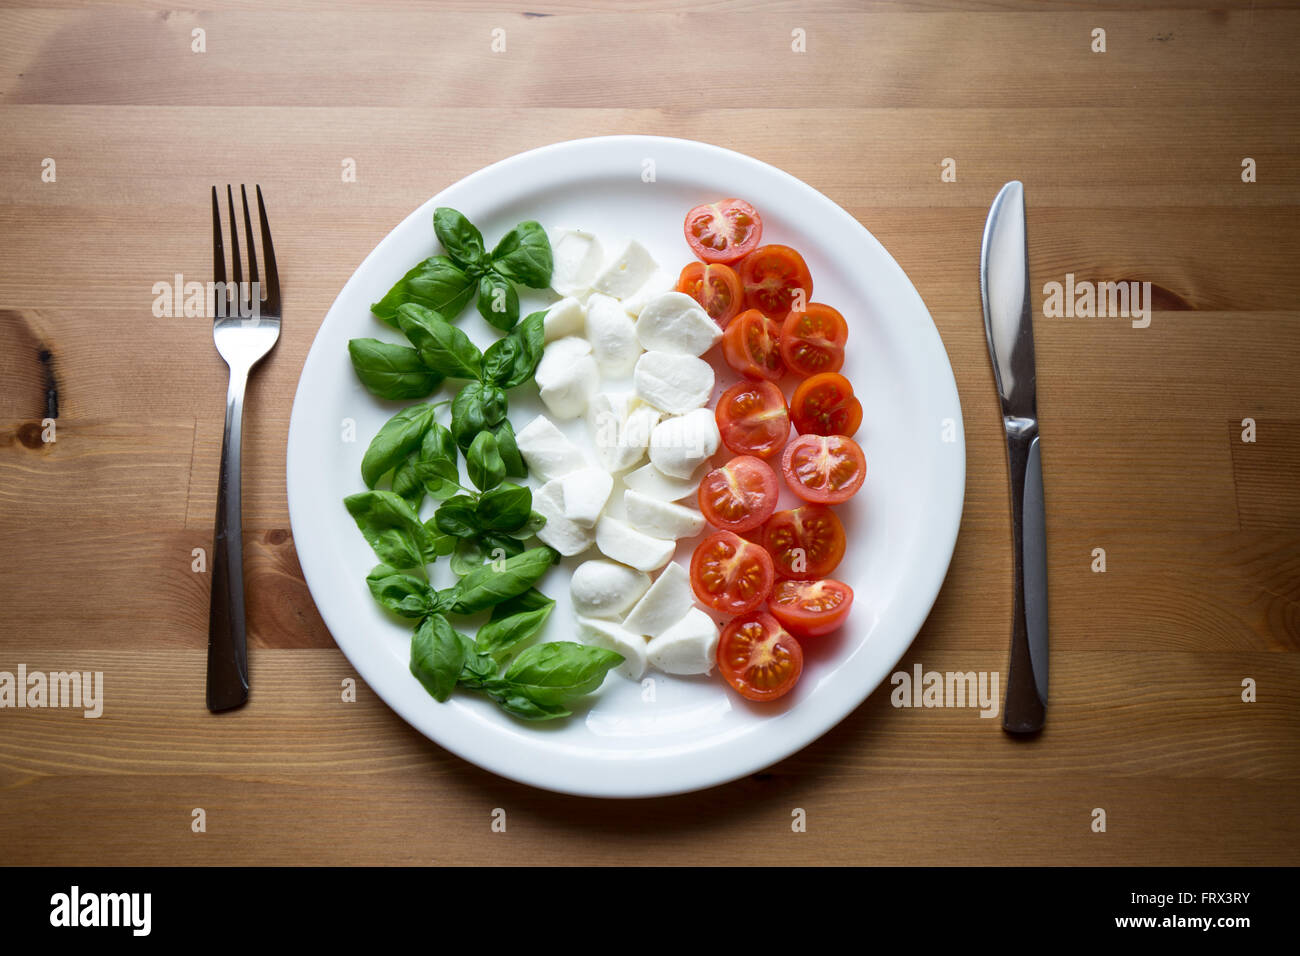 L'Italie sur une assiette. Les meilleurs ingrédients : Basilic, mozzarella et tomates cerises, représentant également les couleurs du drapeau de l'Italie. Banque D'Images